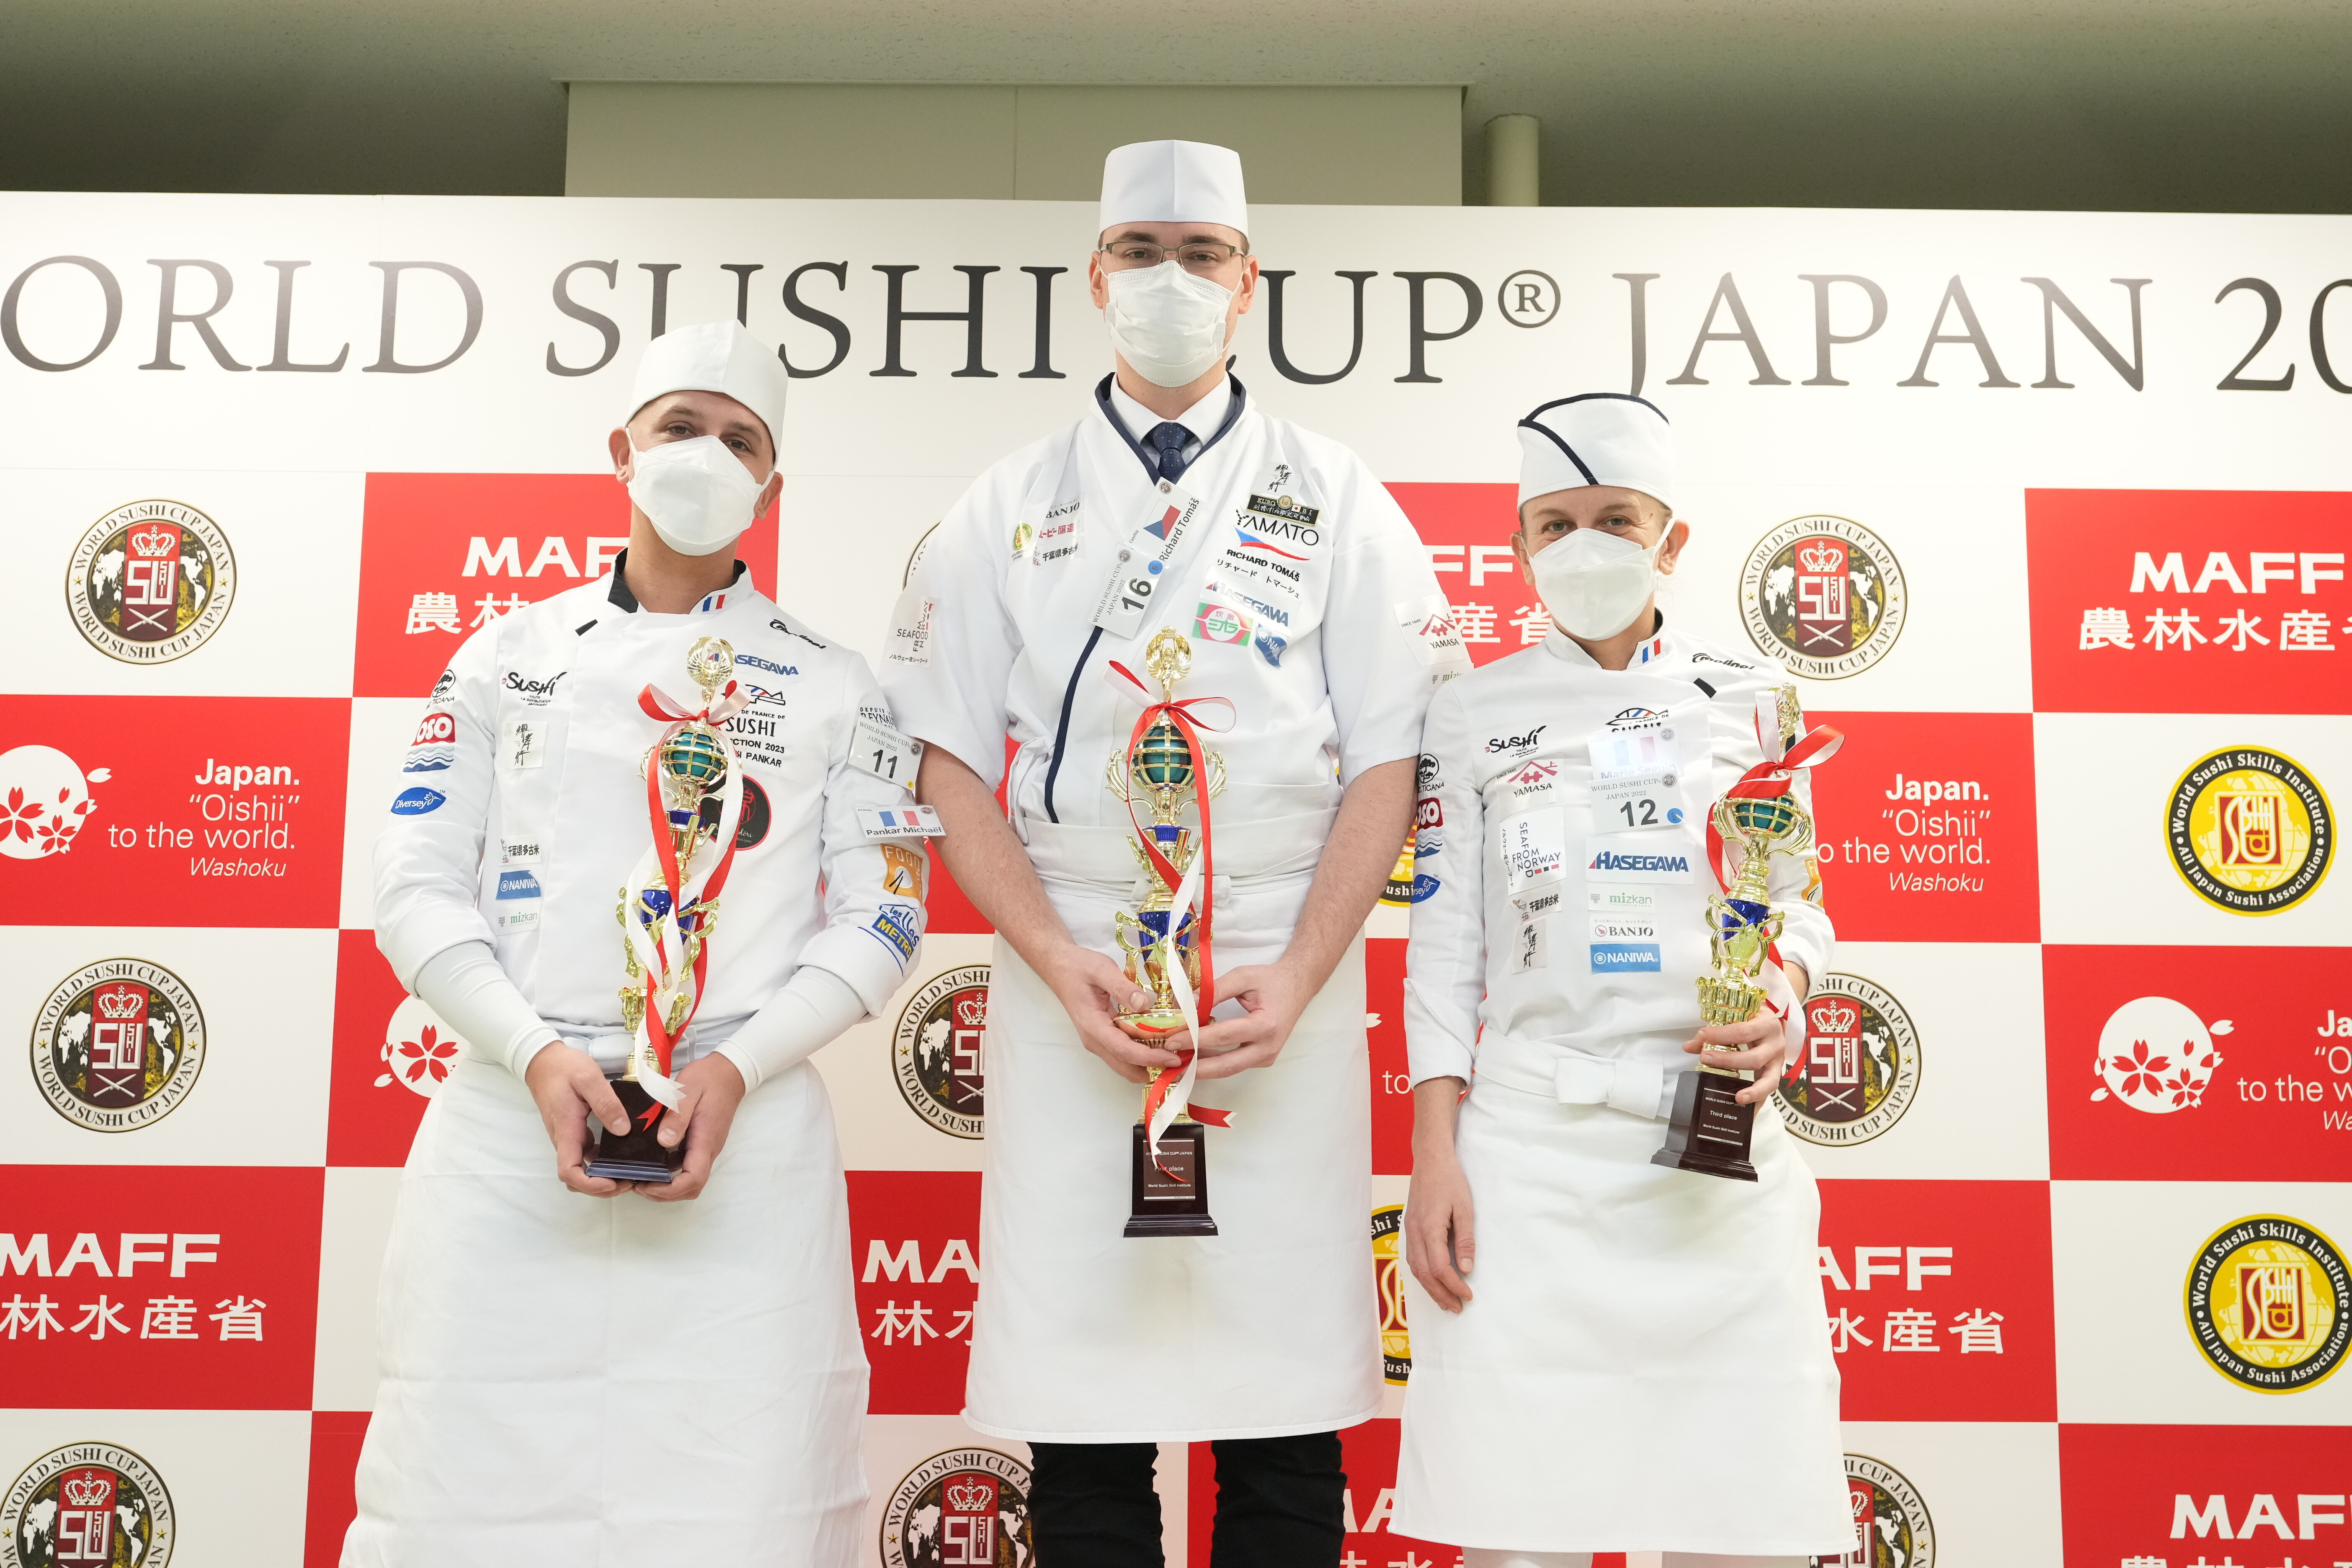 外国人による世界一のすし職人を競う大会
WORLD SUSHI CUP(R) JAPAN 2022を豊洲市場で開催　
優勝者はチェコのRichard Tomas氏！ – Net24